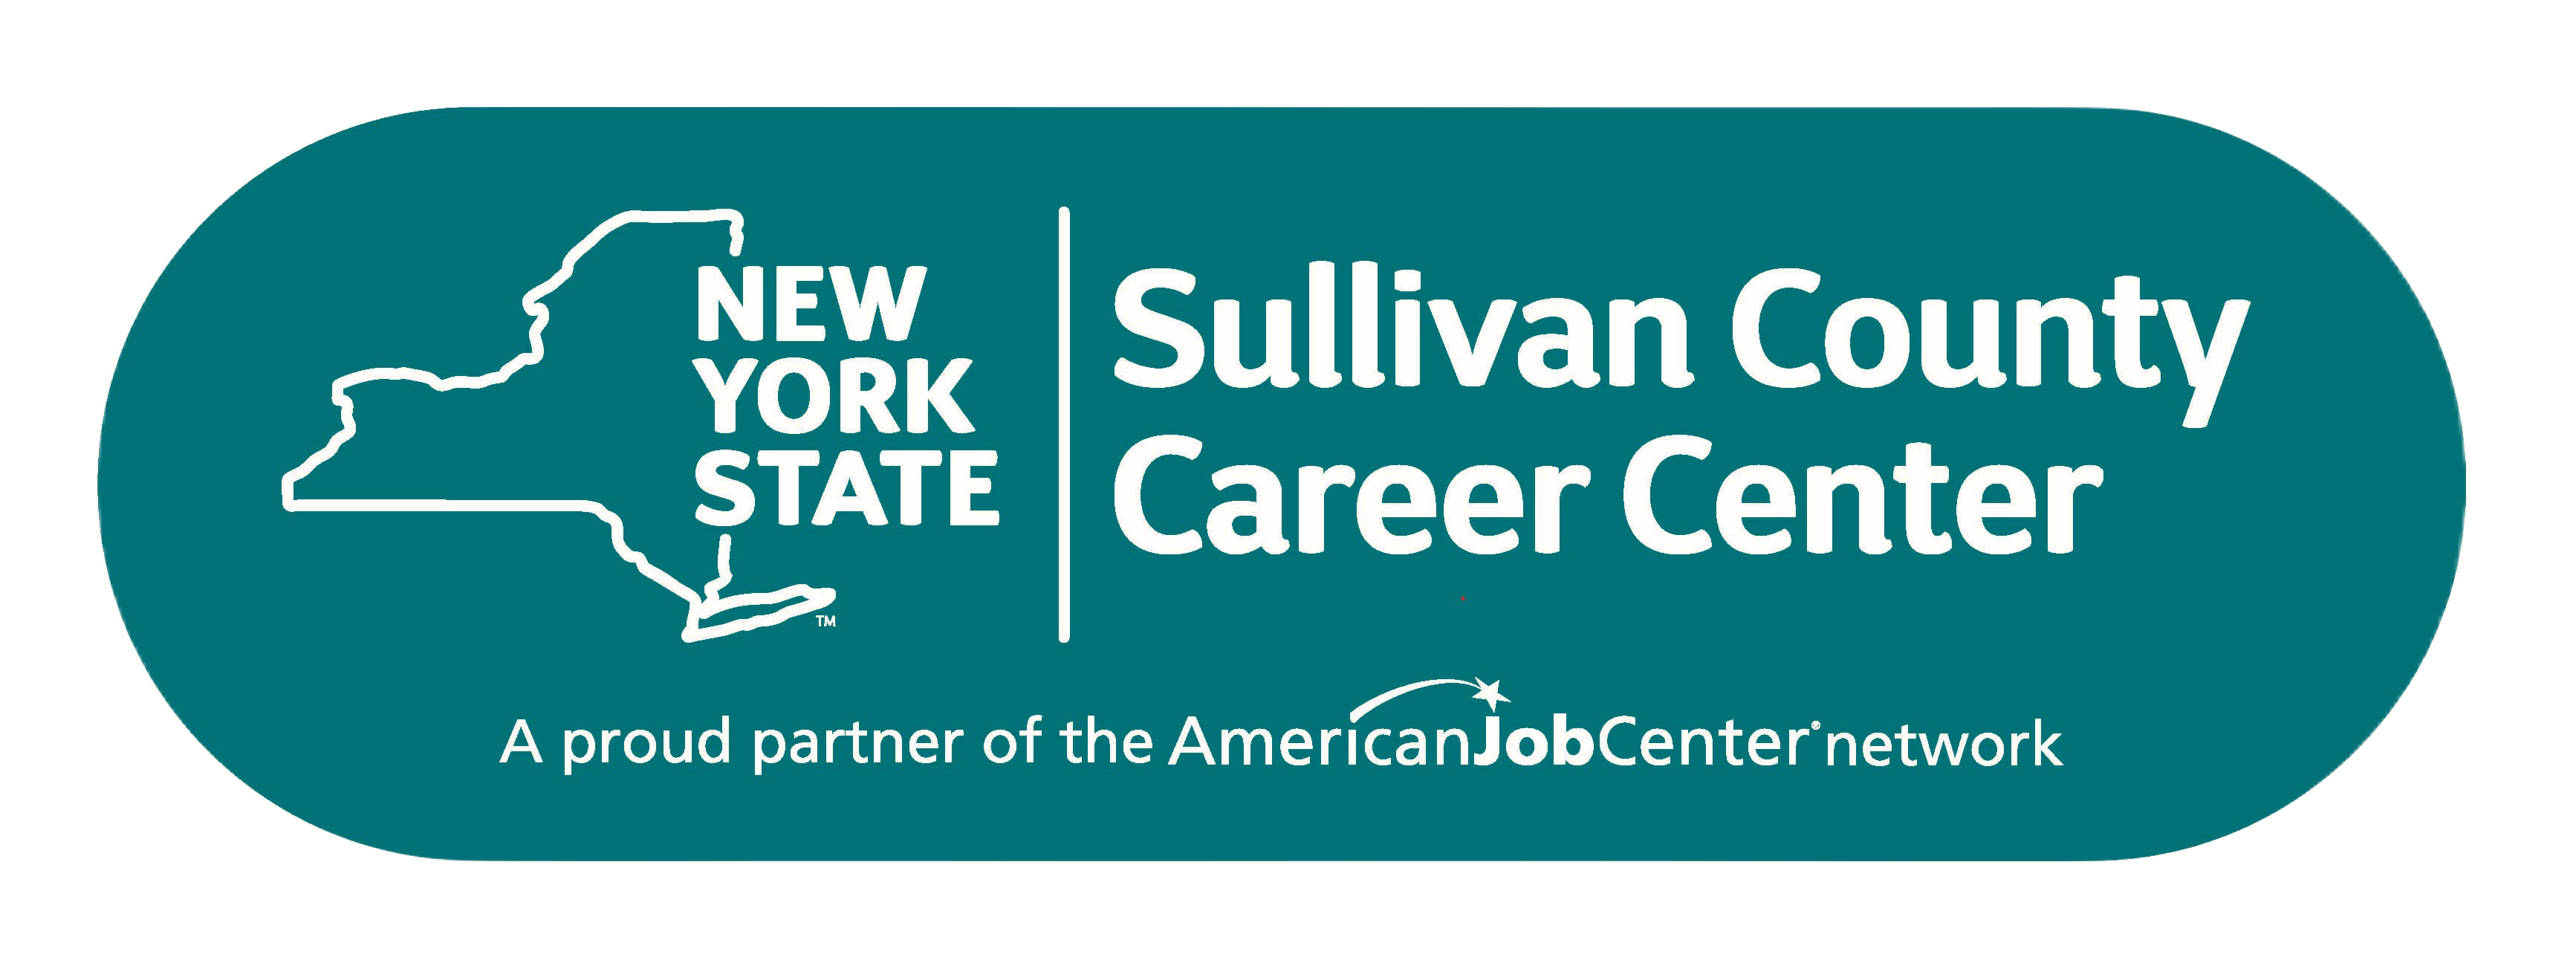 Sullivan County Career Center logo